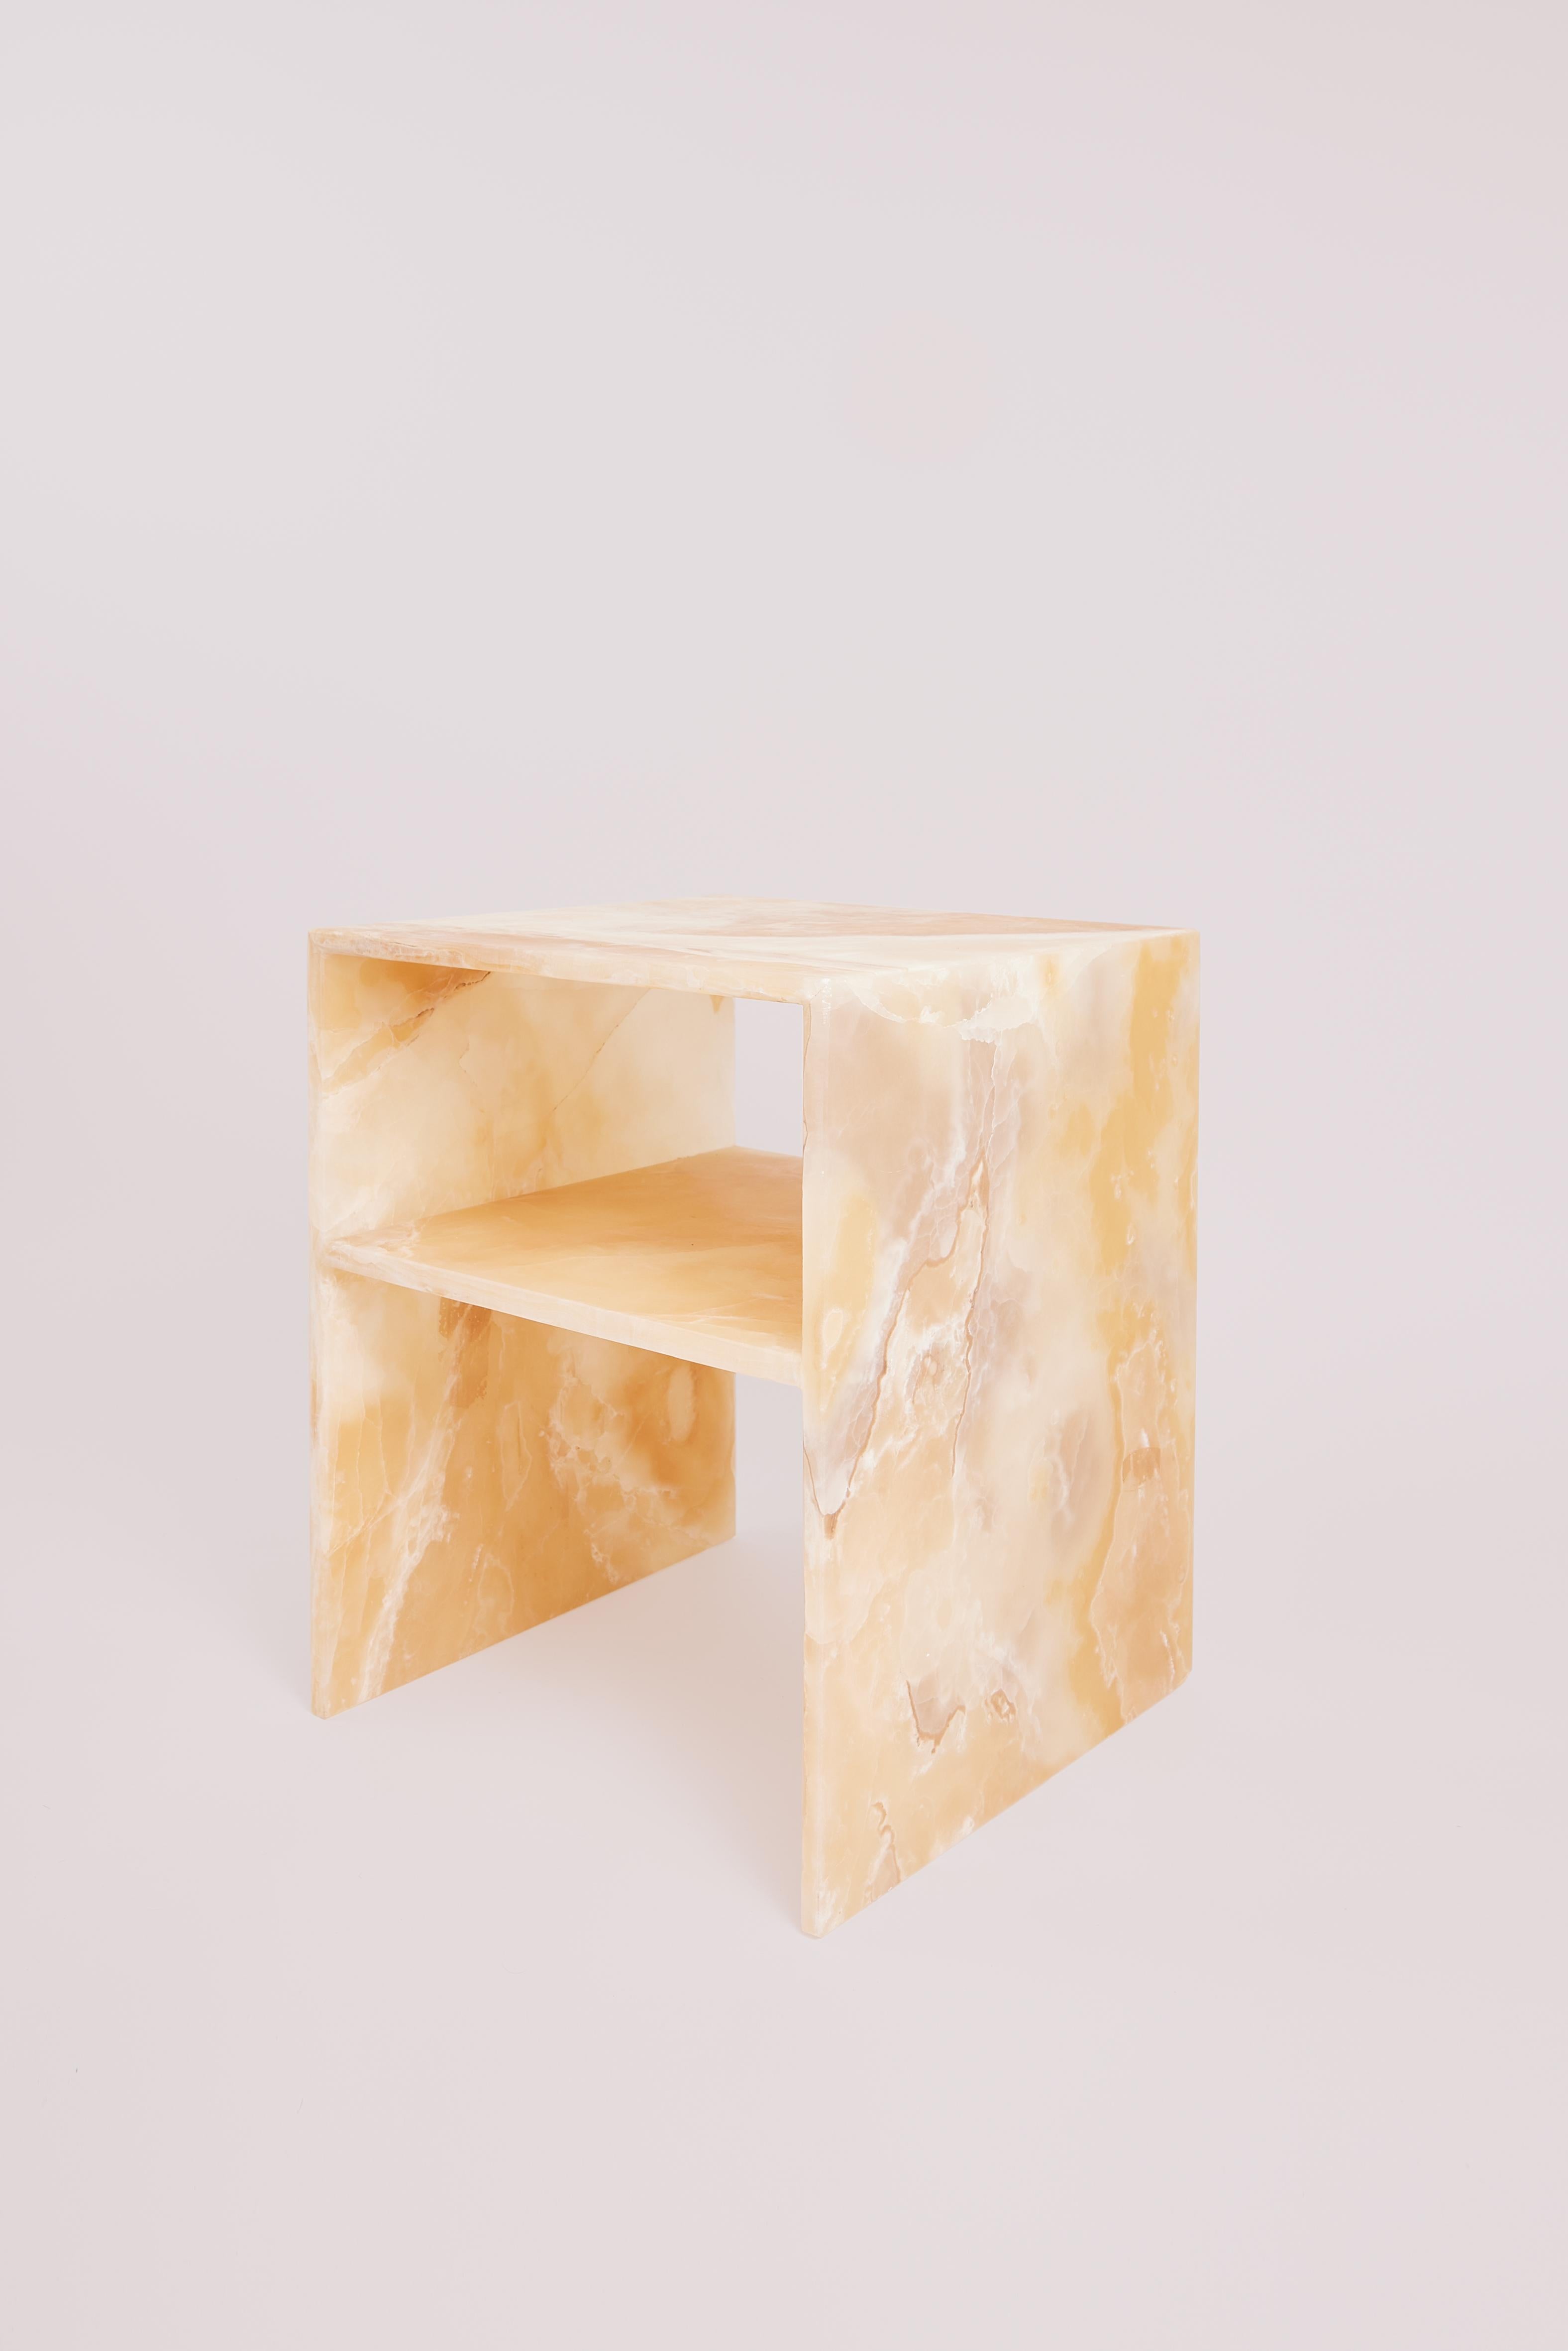 Table de chevet Rosa en onyx ambré du Studio Gaia Paris
Dimensions : L 40 x D 40 x H 50 cm
MATERIAL : Ambre Onyx

La table Rosa est une table de chevet, une table d'appoint ou une table finale.

Il est fabriqué en onyx exotique connu pour sa beauté